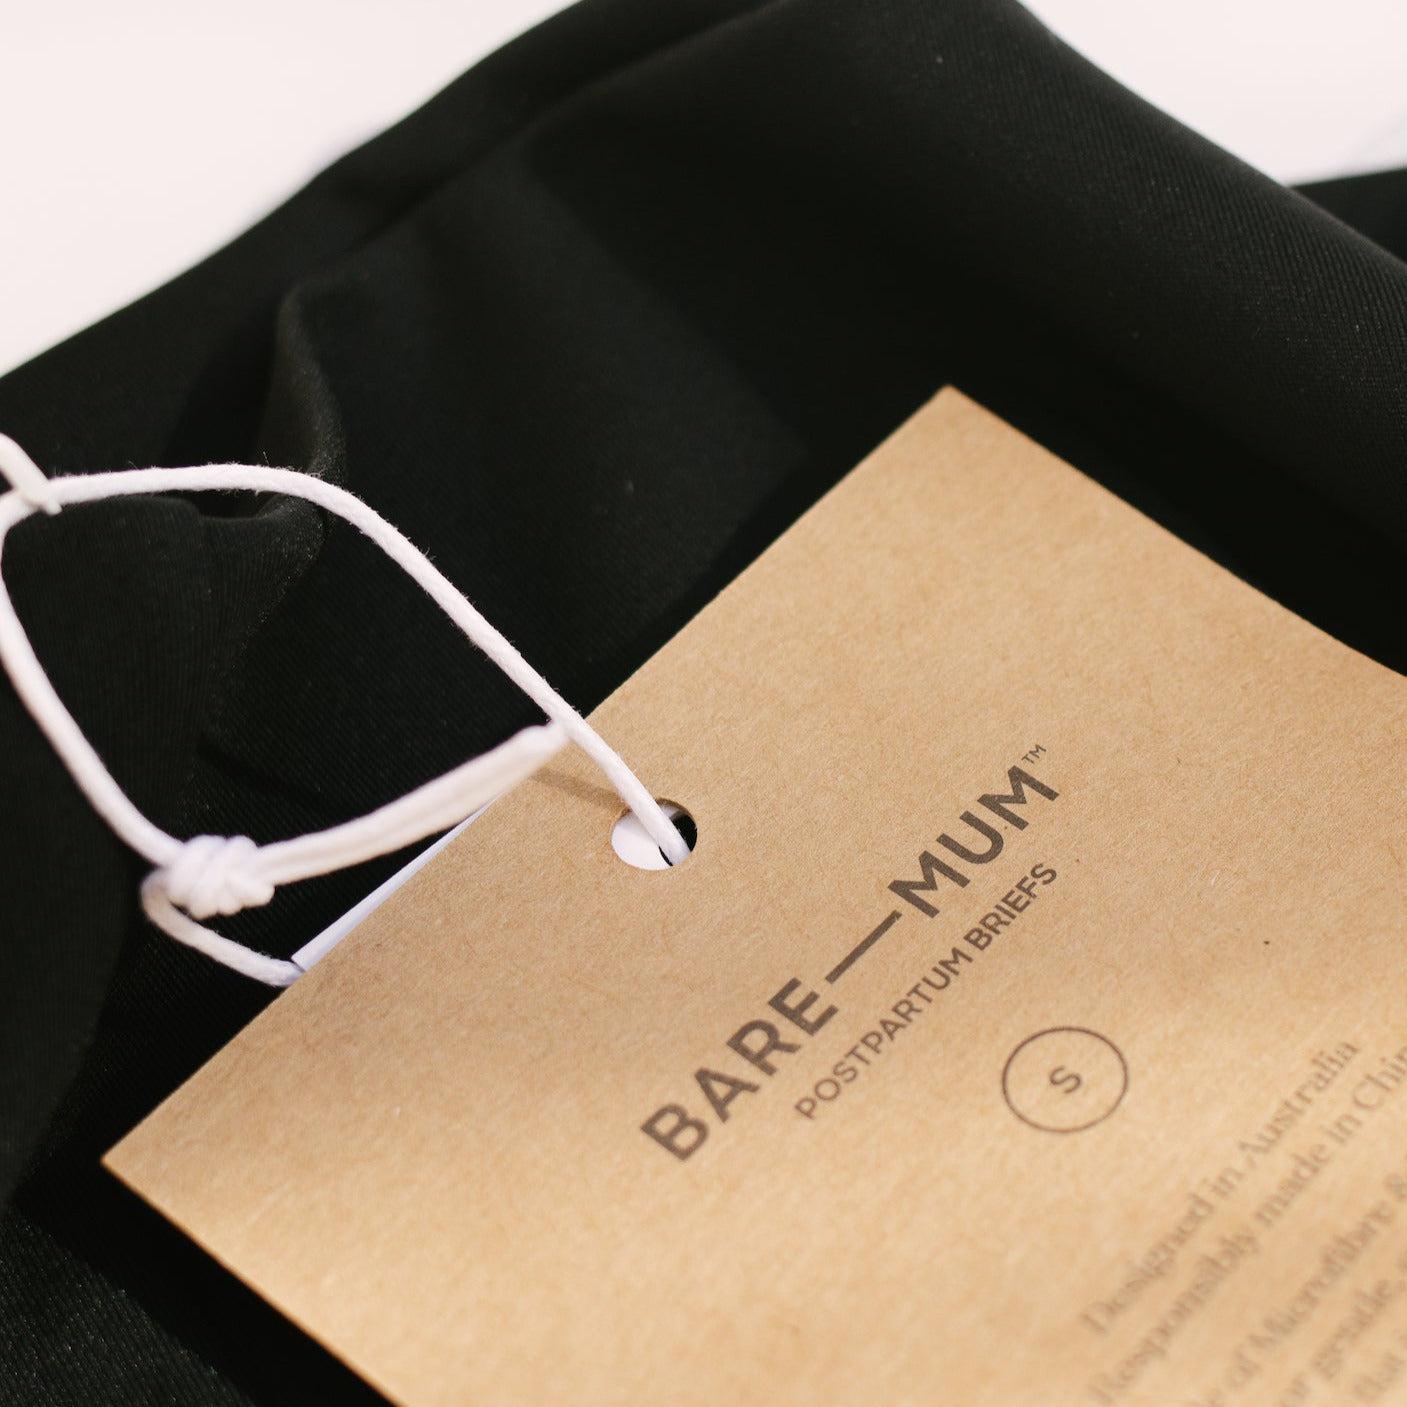 Postpartum black briefs with Bare Mum label.